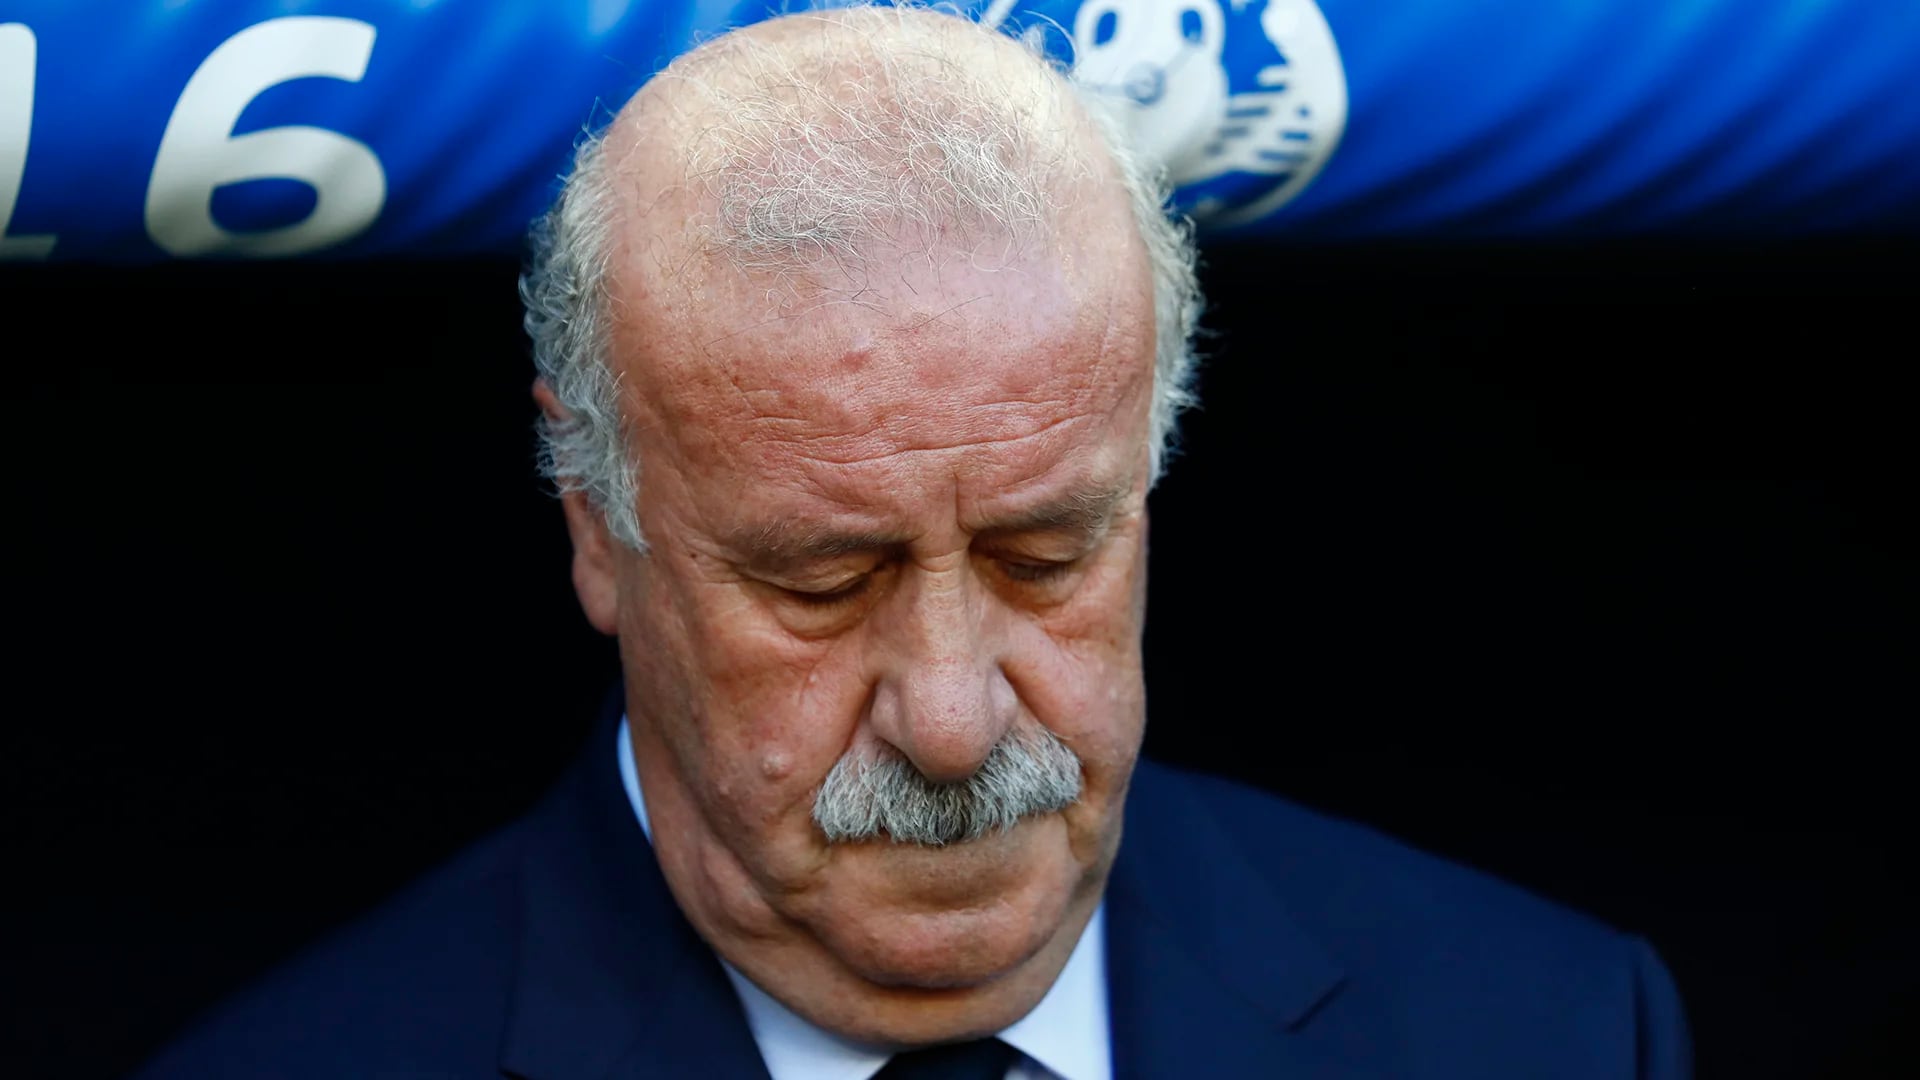 El entrenador dejó su cargo en la Selección de España tras la eliminación en octavos de la Eurocopa 2016 (Reuters)